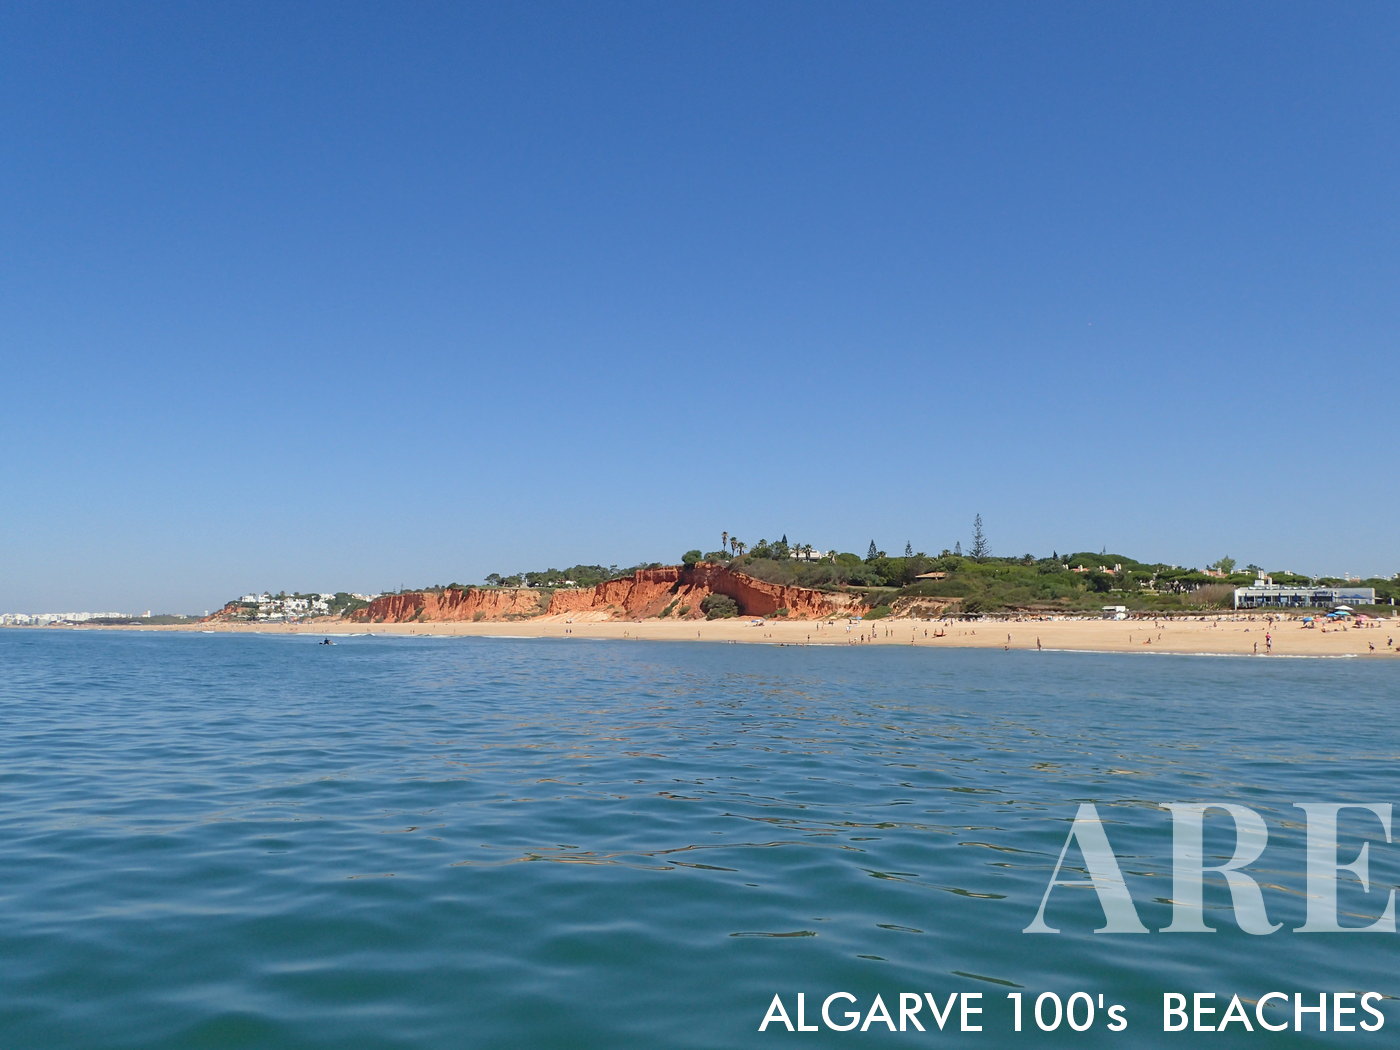 Las playas de Garrão y Ancão son dos de las gemas escondidas del Algarve, ubicadas entre las bulliciosas áreas de Quinta do Lago y Vale do Lobo. Ambas playas cuentan con arena dorada y aguas cristalinas y azules, lo que brinda un entorno idílico para que los bañistas se relajen y tomen el sol.